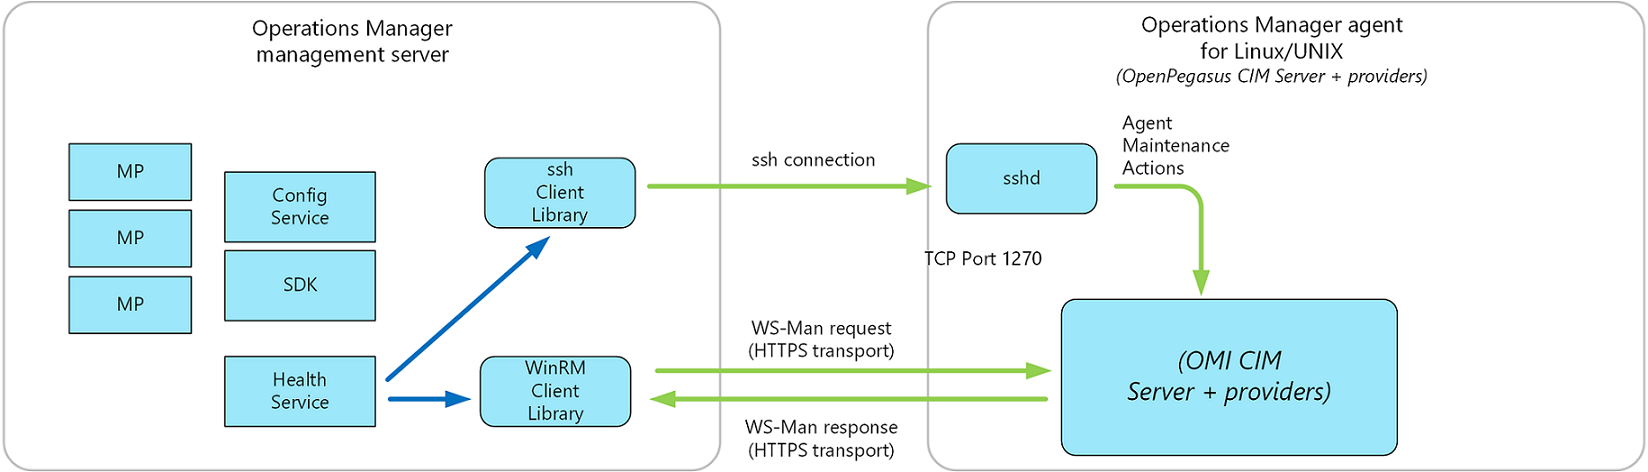 Diagram zaktualizowanej architektury oprogramowania agenta systemu UNIX/Linux programu Operations Manager.